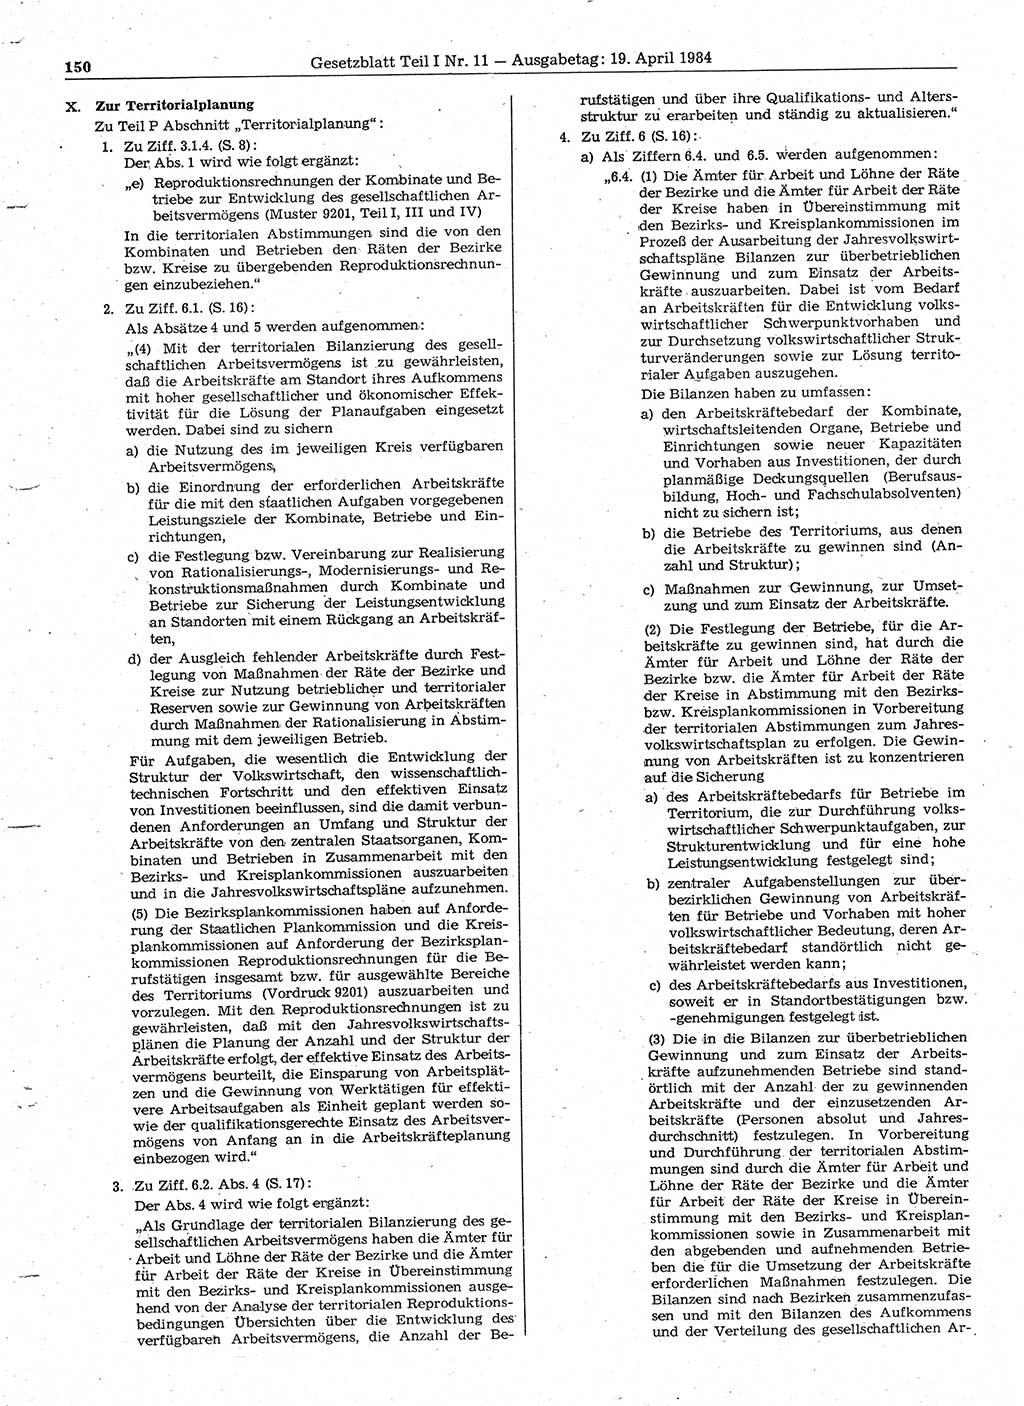 Gesetzblatt (GBl.) der Deutschen Demokratischen Republik (DDR) Teil Ⅰ 1984, Seite 150 (GBl. DDR Ⅰ 1984, S. 150)